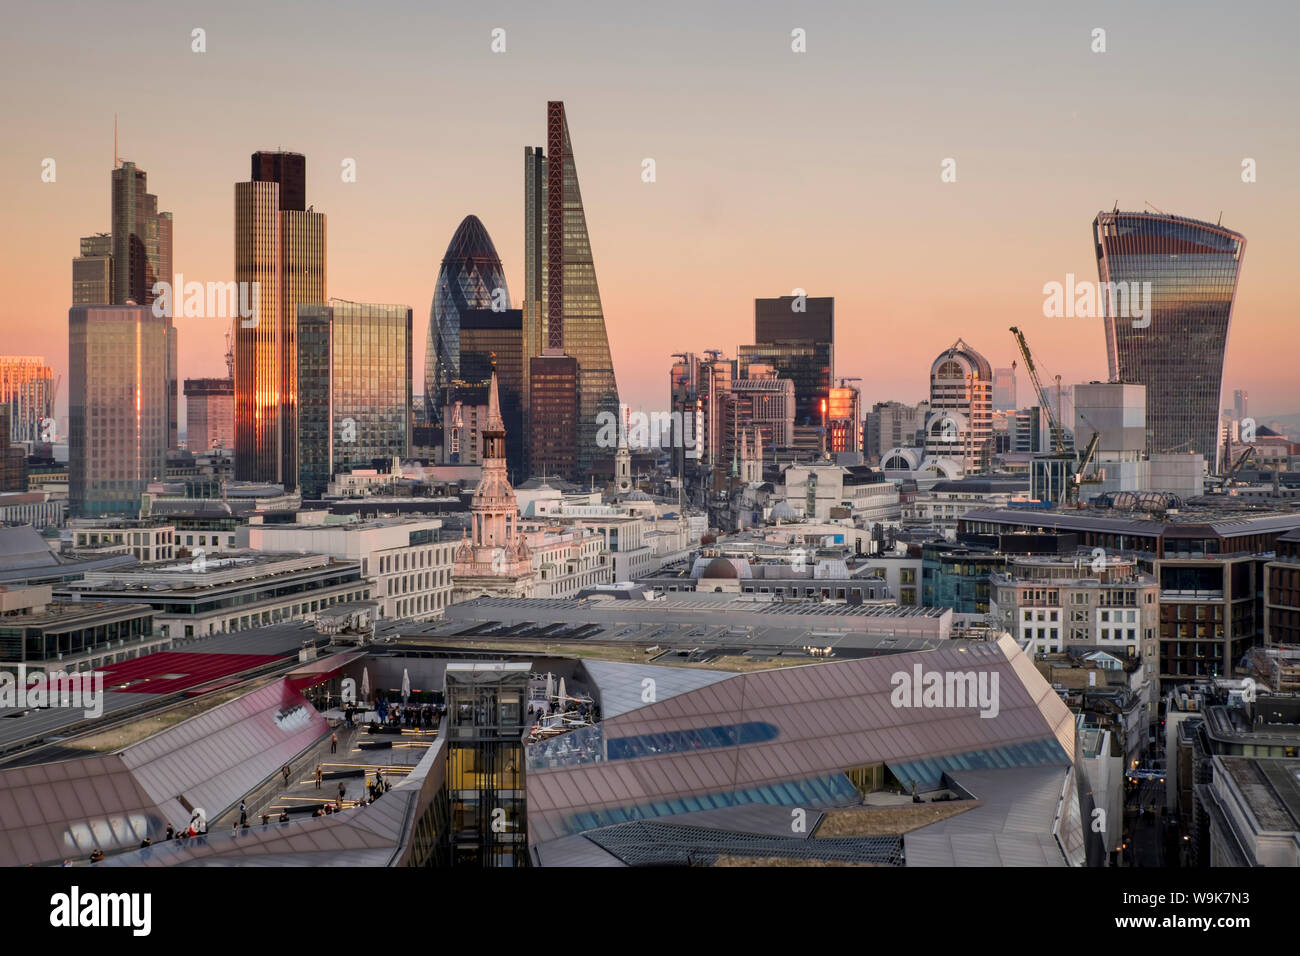 Ville de London skyline de la Cathédrale St Paul, Londres, Angleterre, Royaume-Uni, Europe Banque D'Images